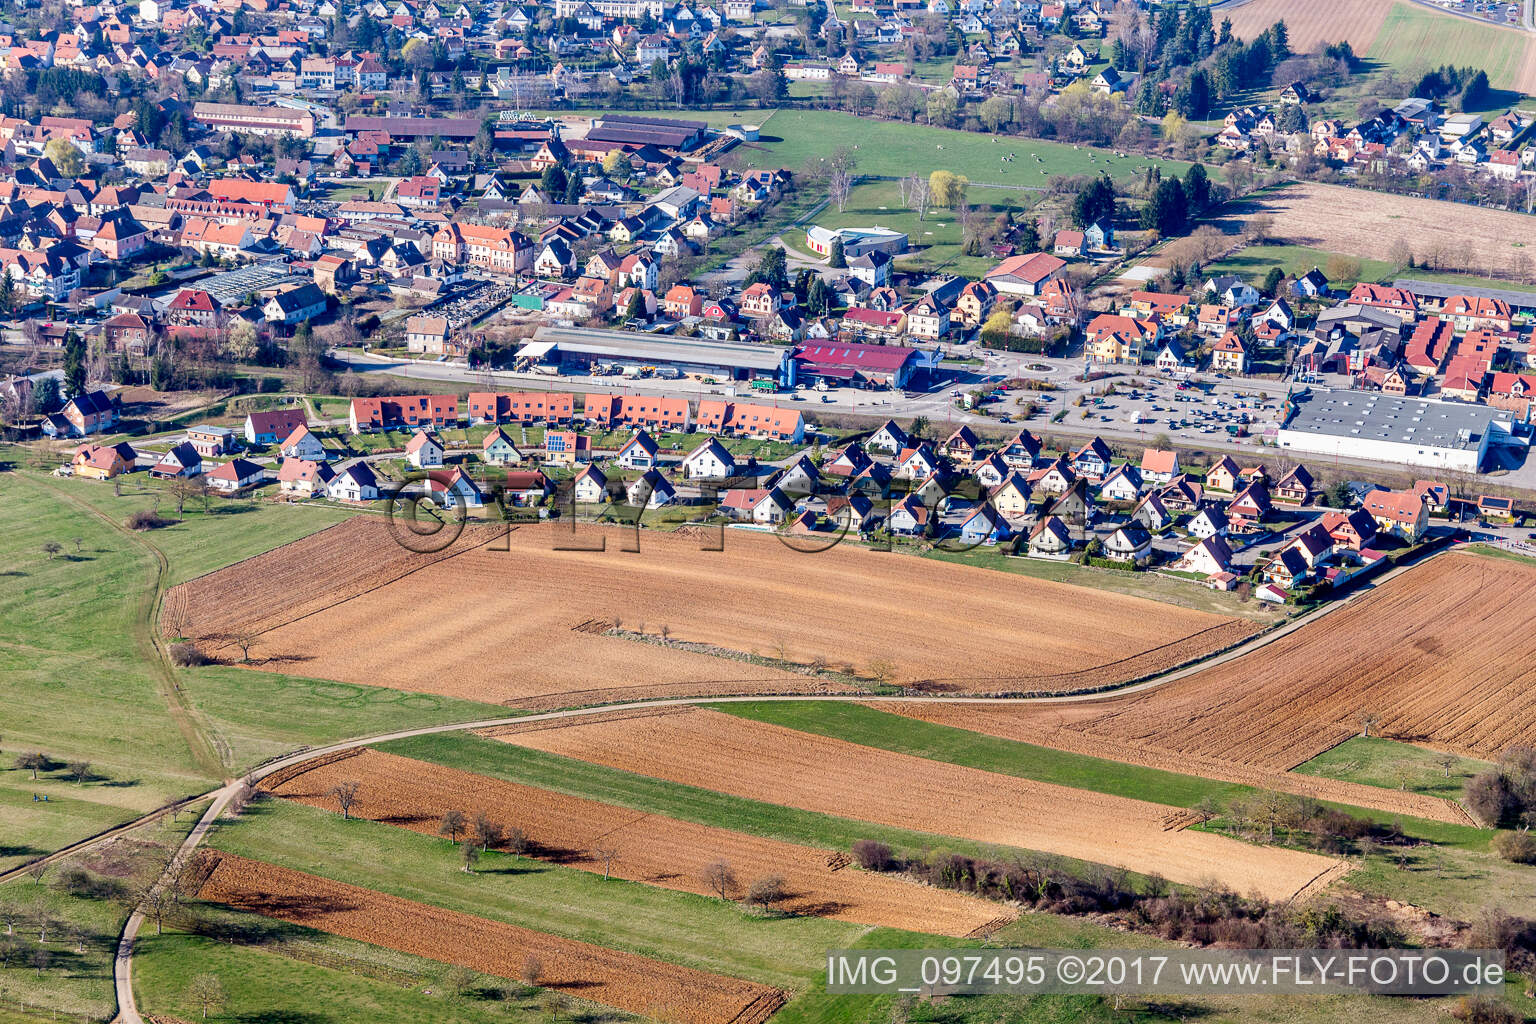 Settlement area in Niedermodern in Grand Est, France